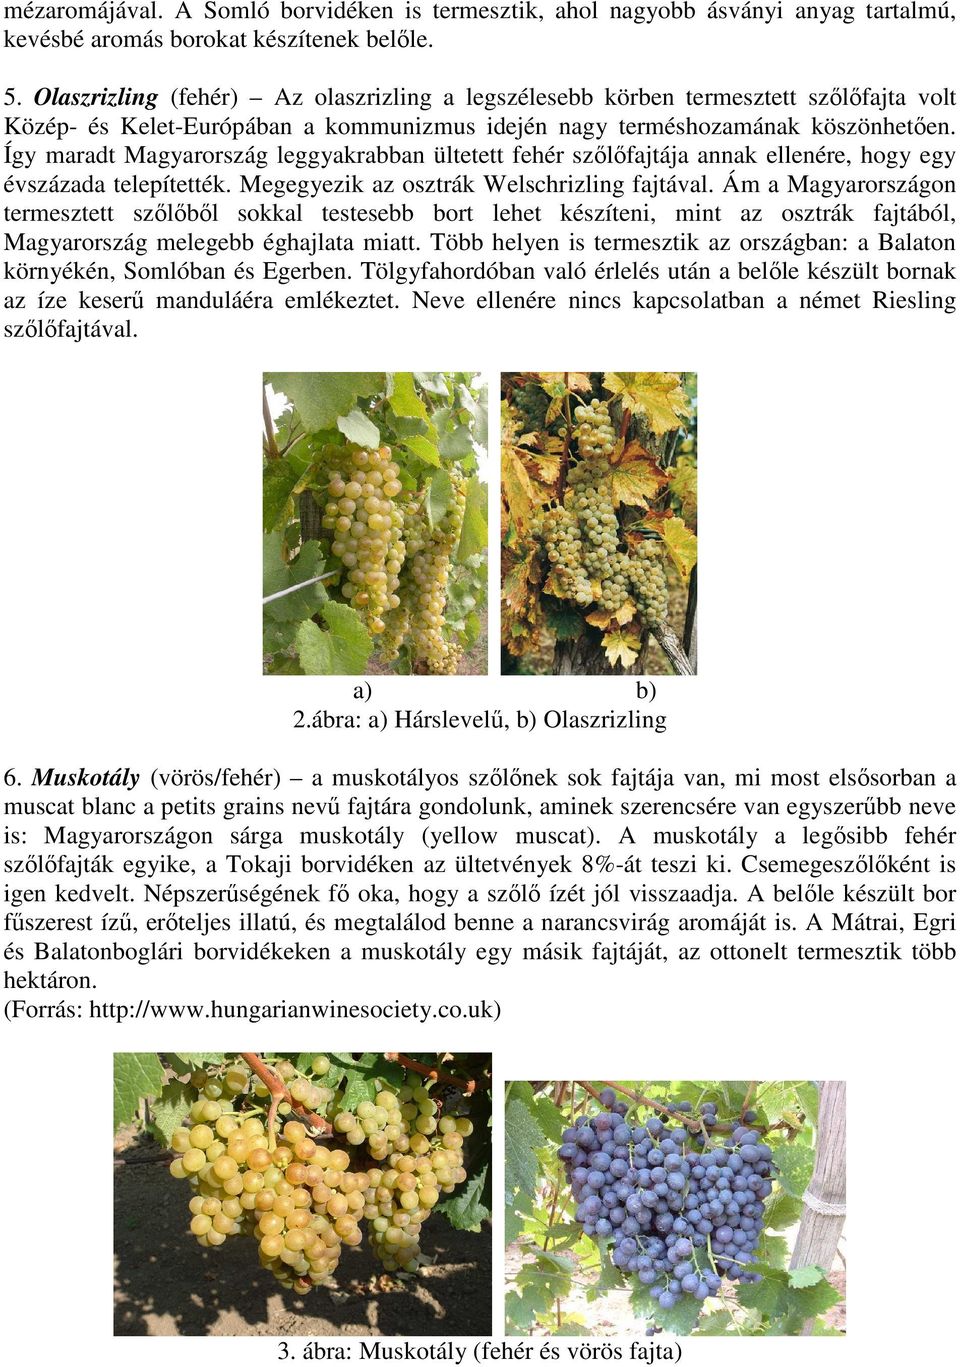 Így maradt Magyarország leggyakrabban ültetett fehér szőlőfajtája annak ellenére, hogy egy évszázada telepítették. Megegyezik az osztrák Welschrizling fajtával.